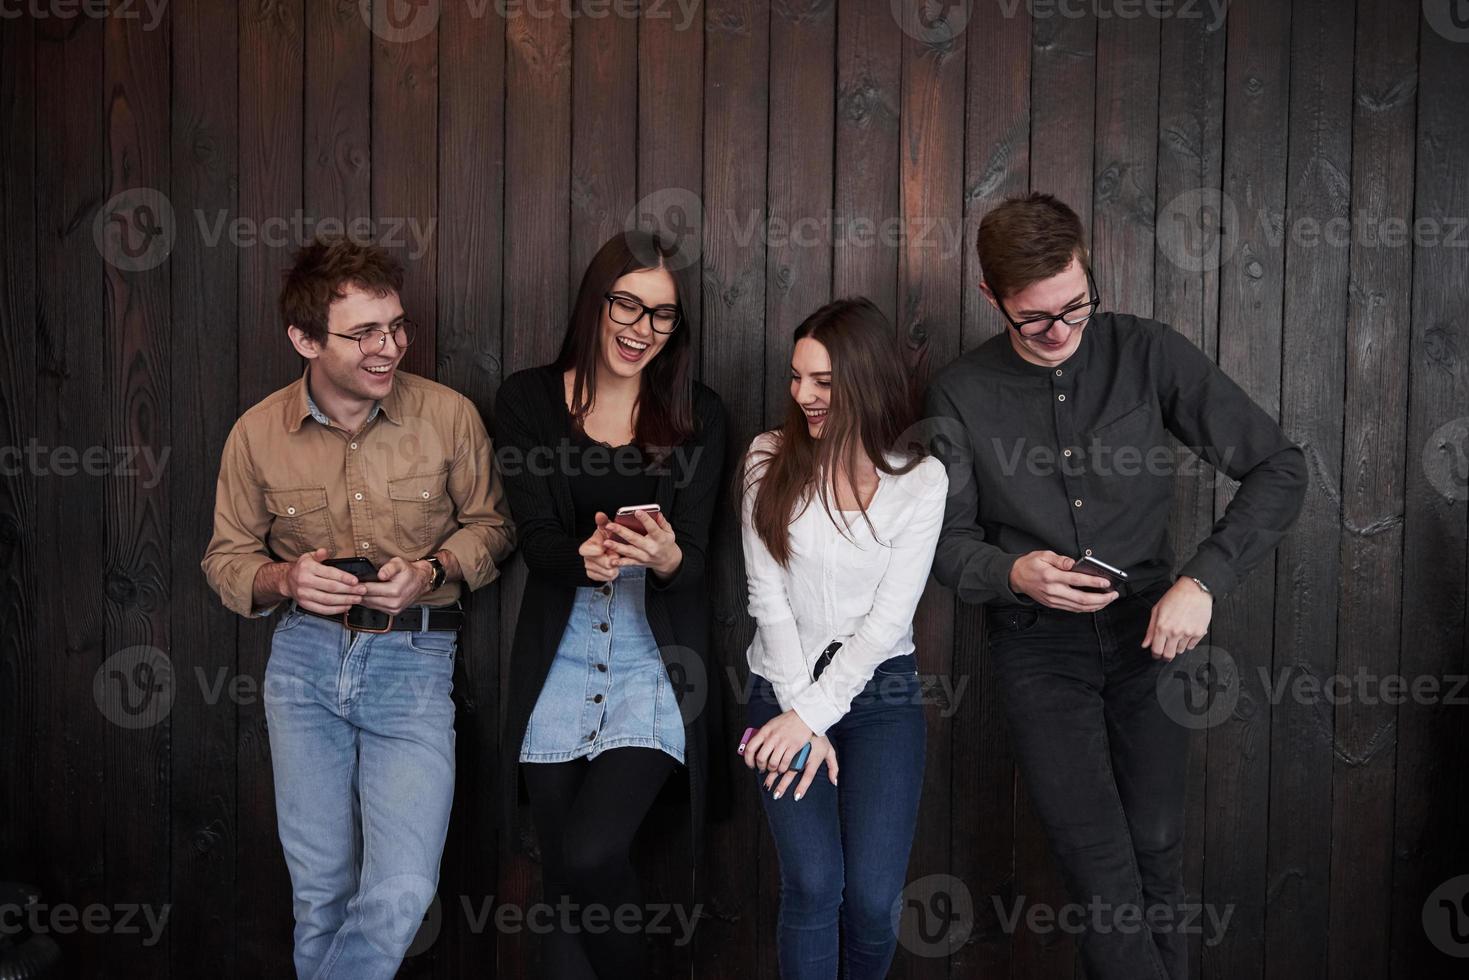 garota faz piada engraçada. juventude fica contra a parede de madeira preta. grupo de amigos passando tempo juntos foto